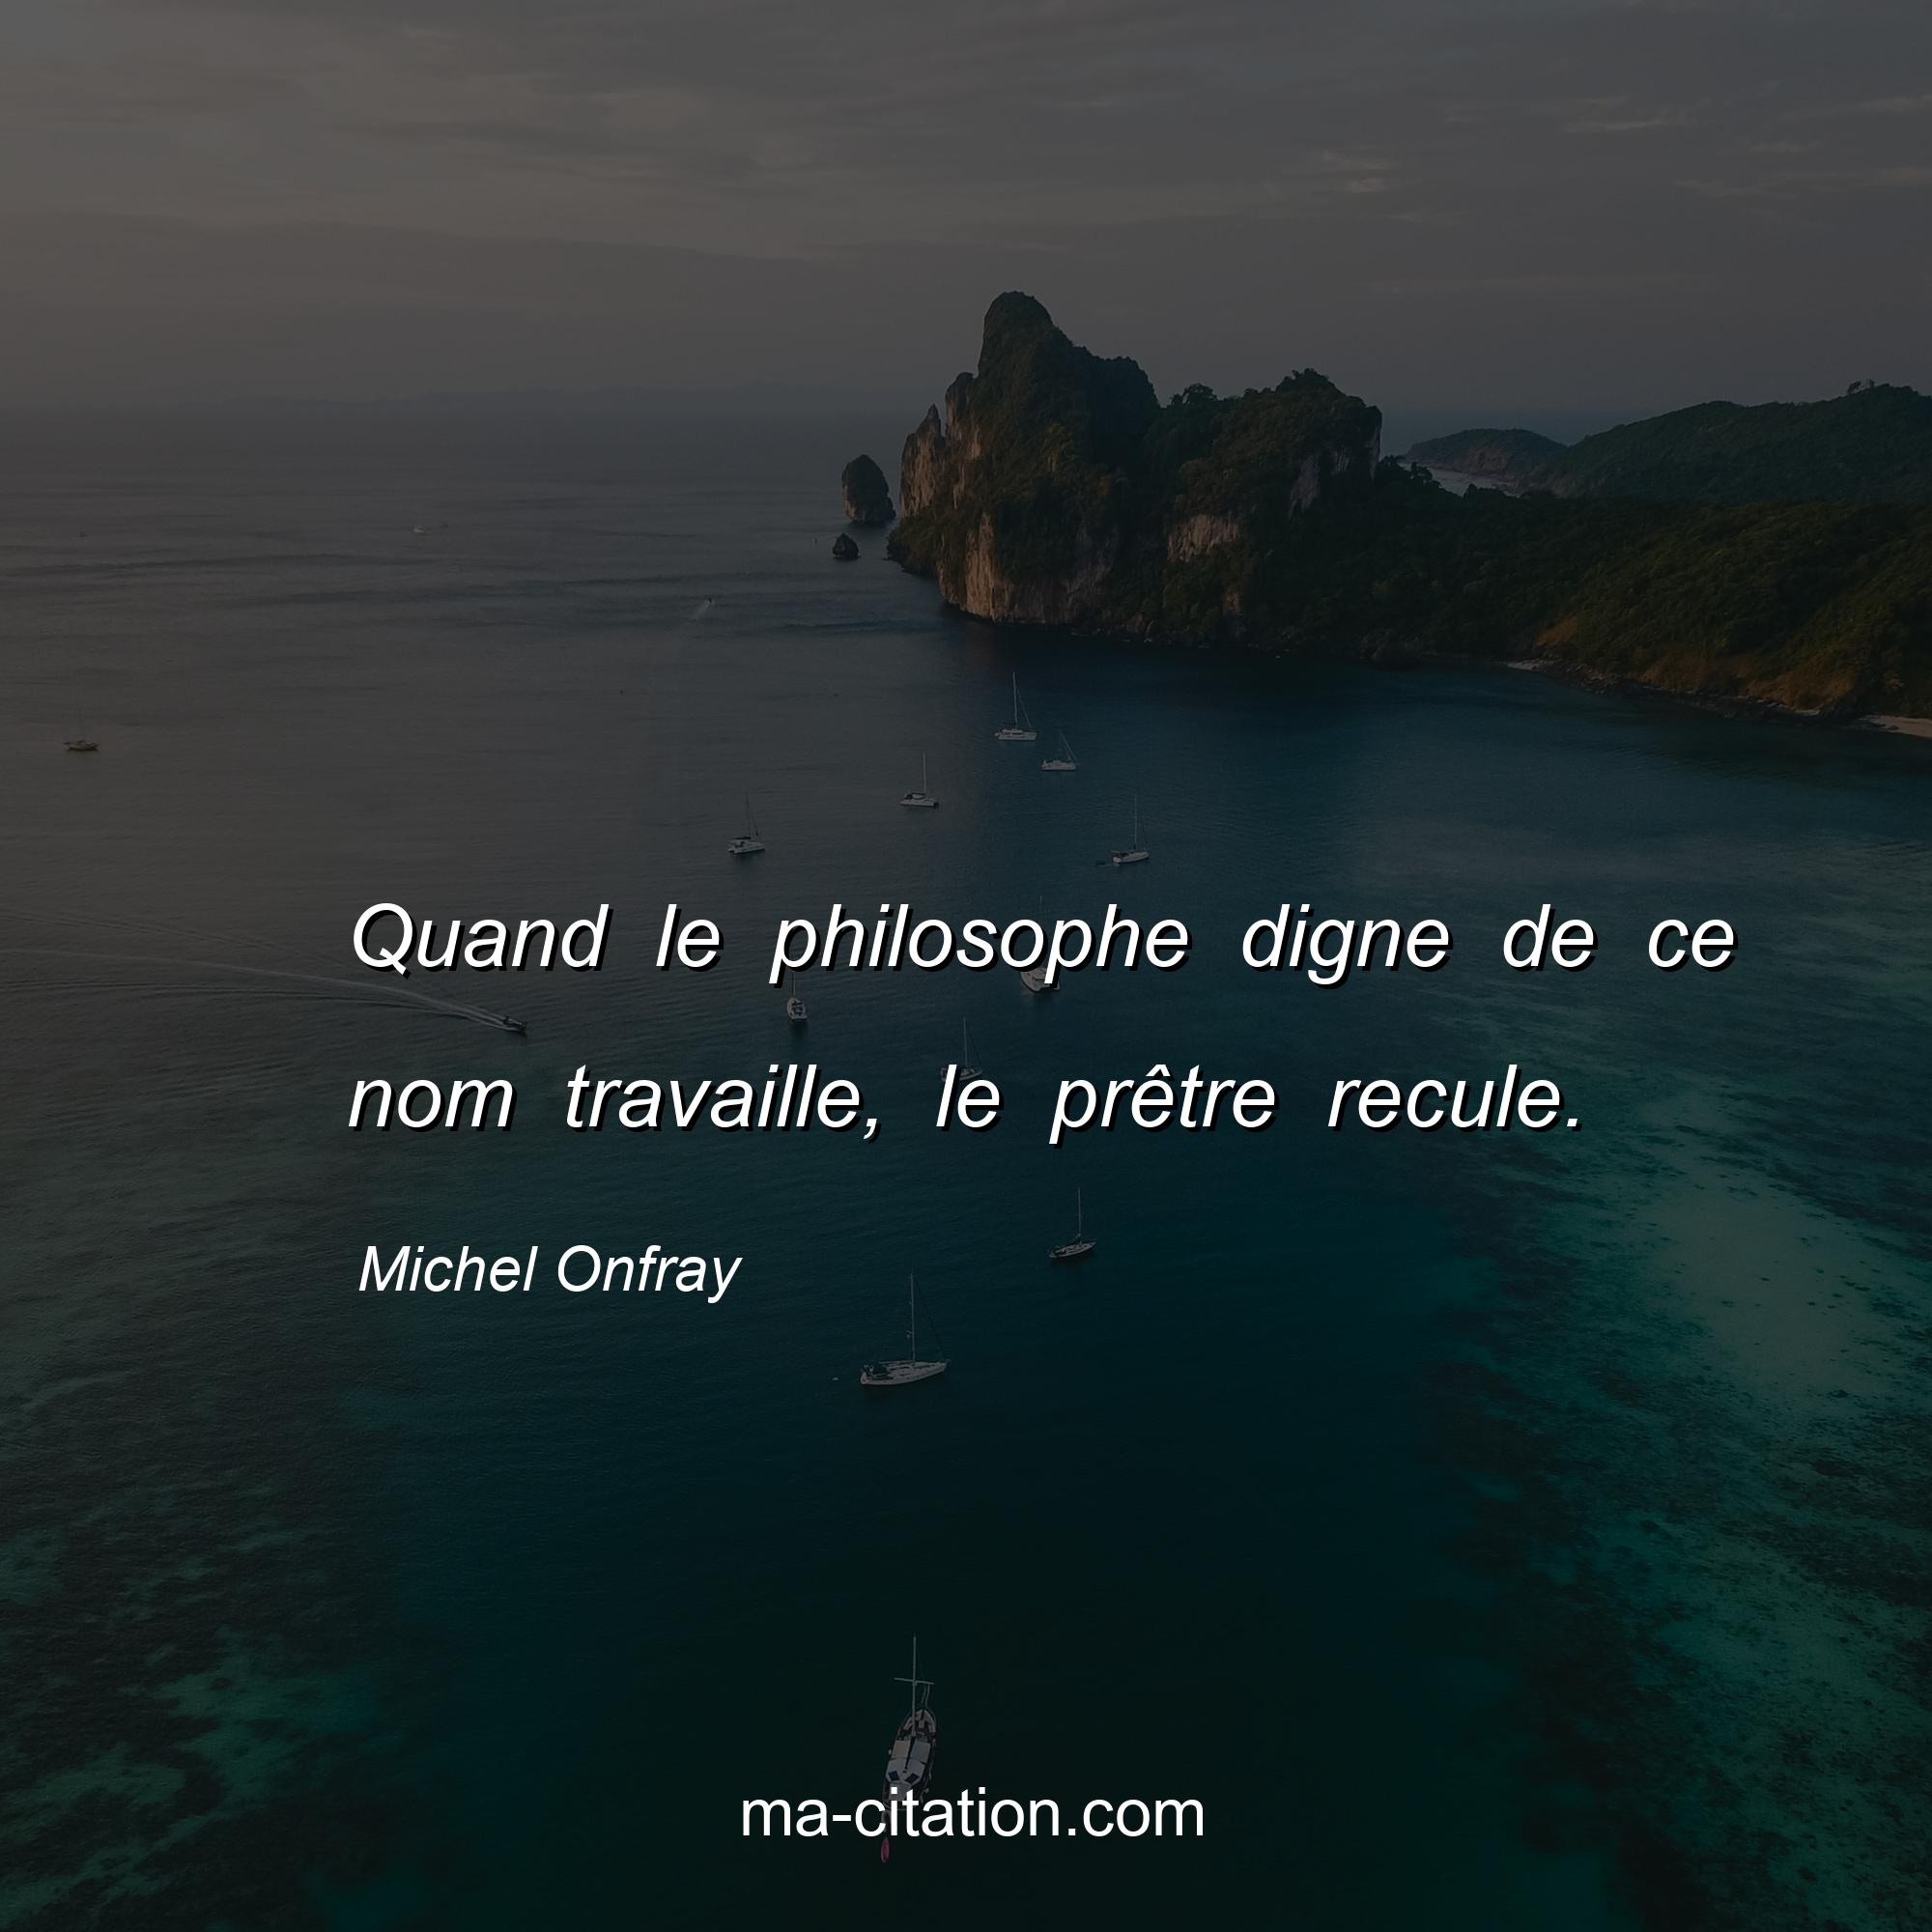 Michel Onfray : Quand le philosophe digne de ce nom travaille, le prêtre recule.